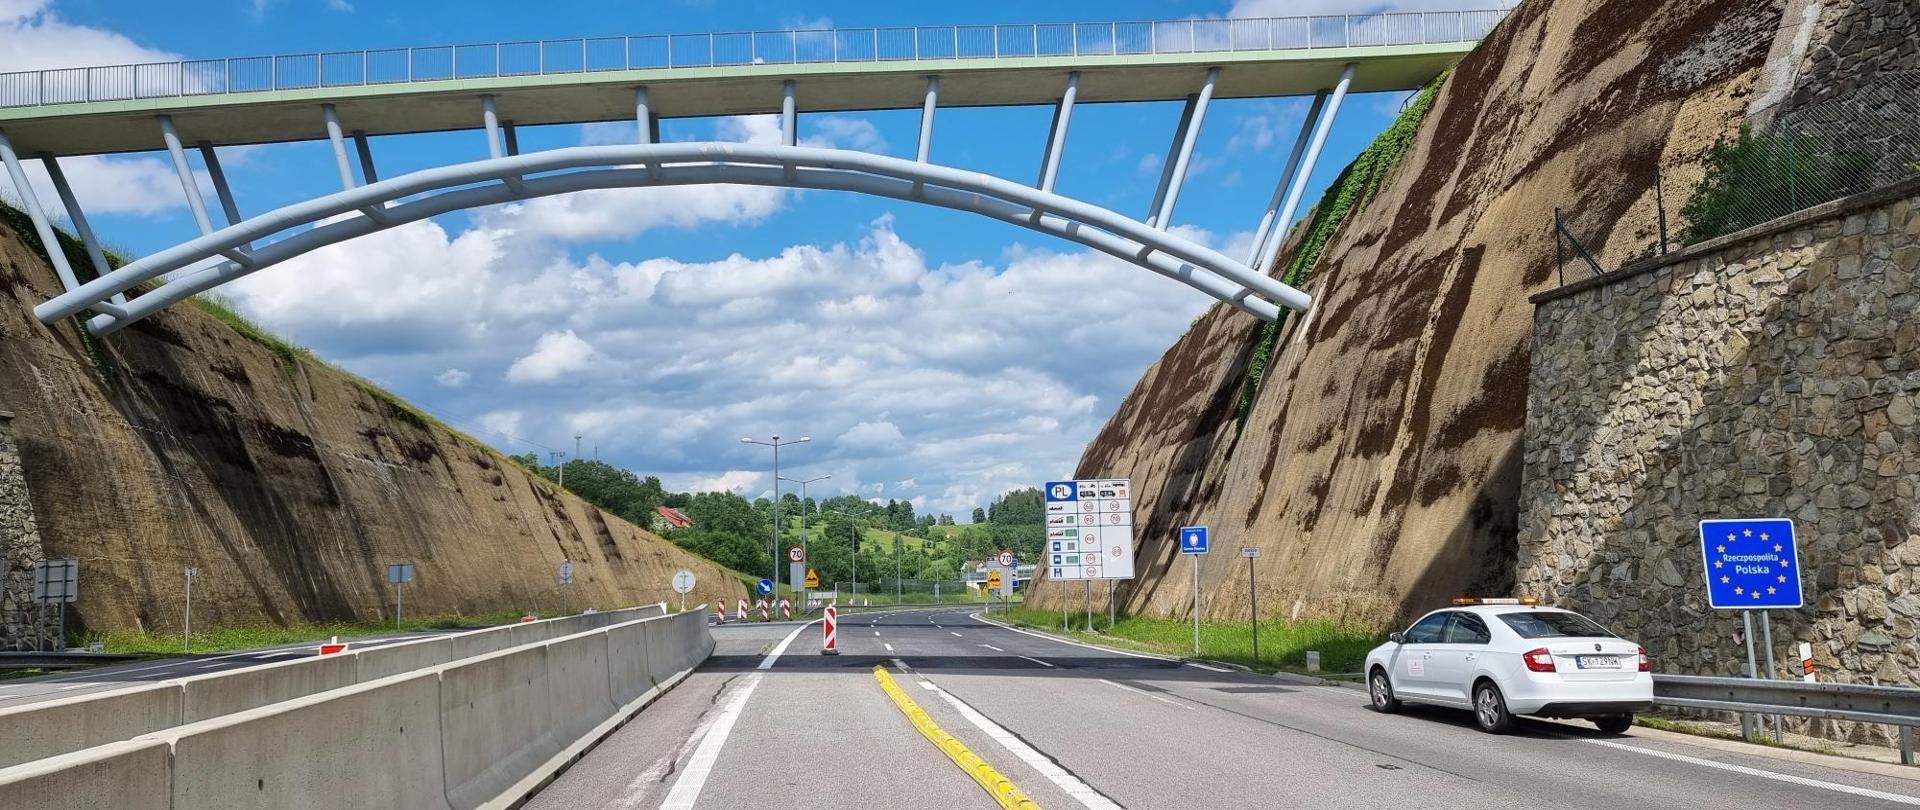 Na wjazdach do Polski ustawione są znaki D-39 informujące o dopuszczalnych prędkościach na drogach w Polsce. Na zdjęciu droga ekspresowa S1 w Zwardoniu pomiędzy skalnymi ścianami, widoczna jezdnia i oznakowanie drogi. 